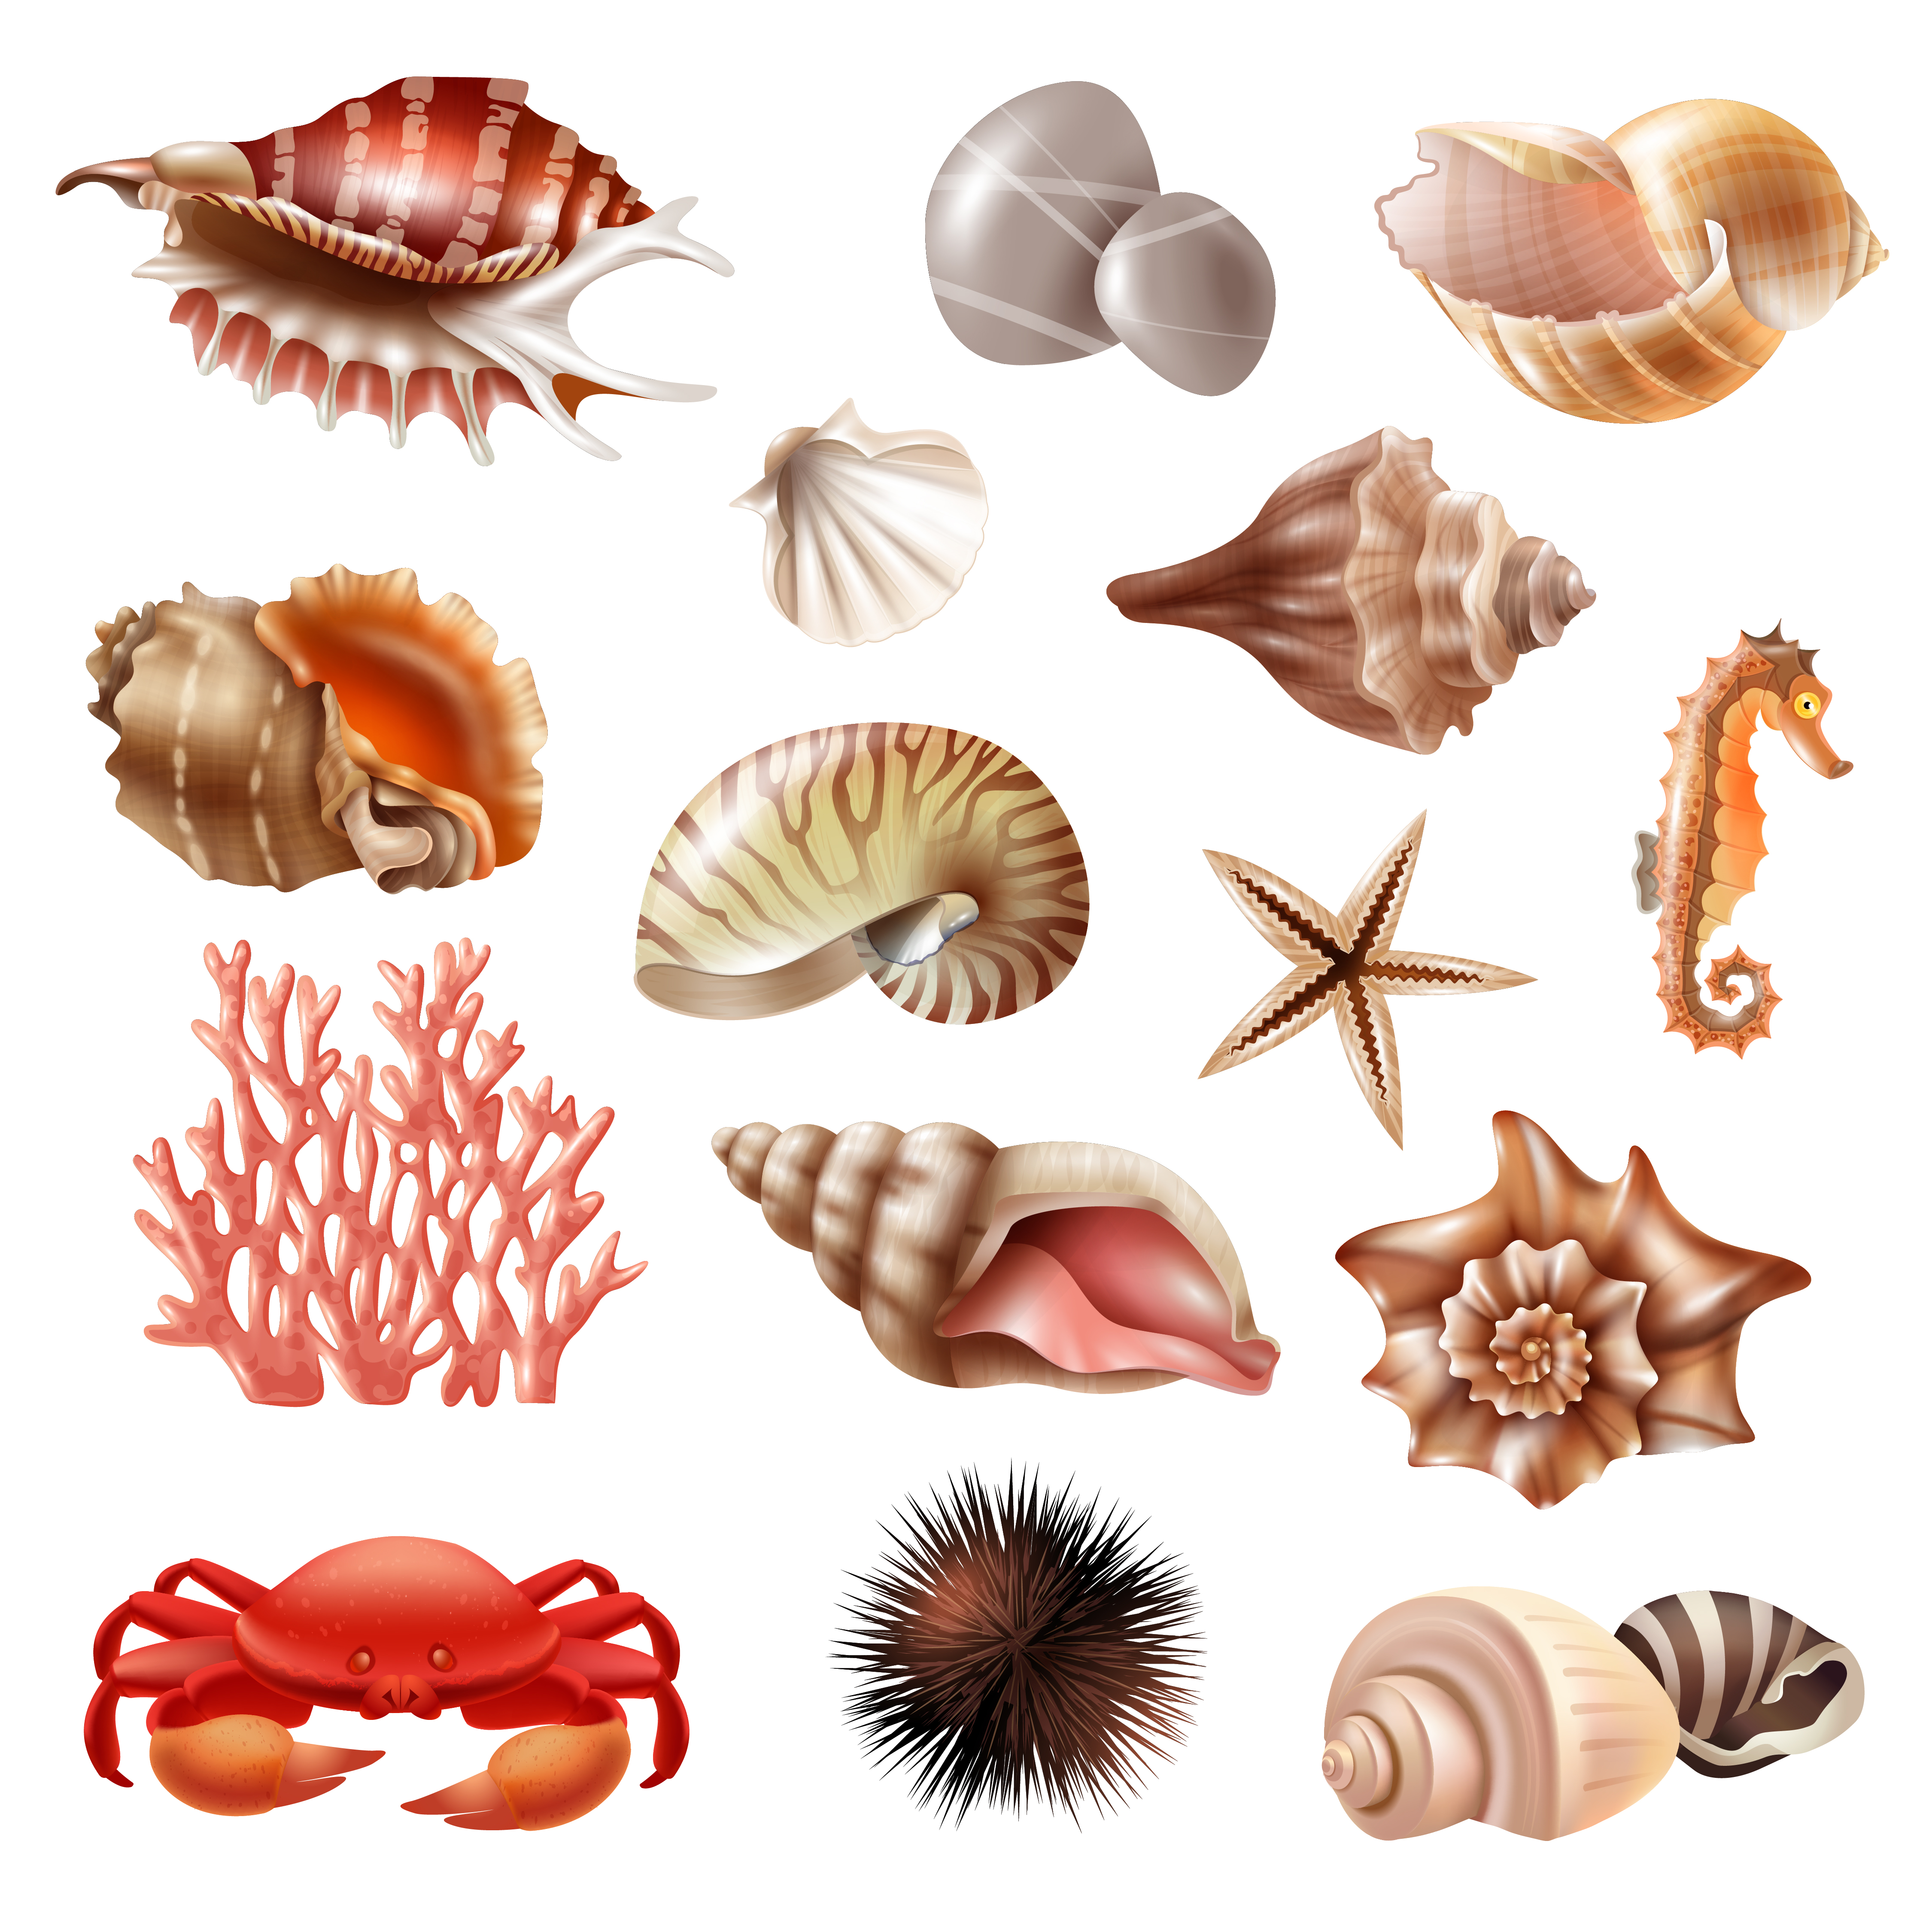 Seashell Realistic Set 475599 - Download Free Vectors, Clipart Graphics